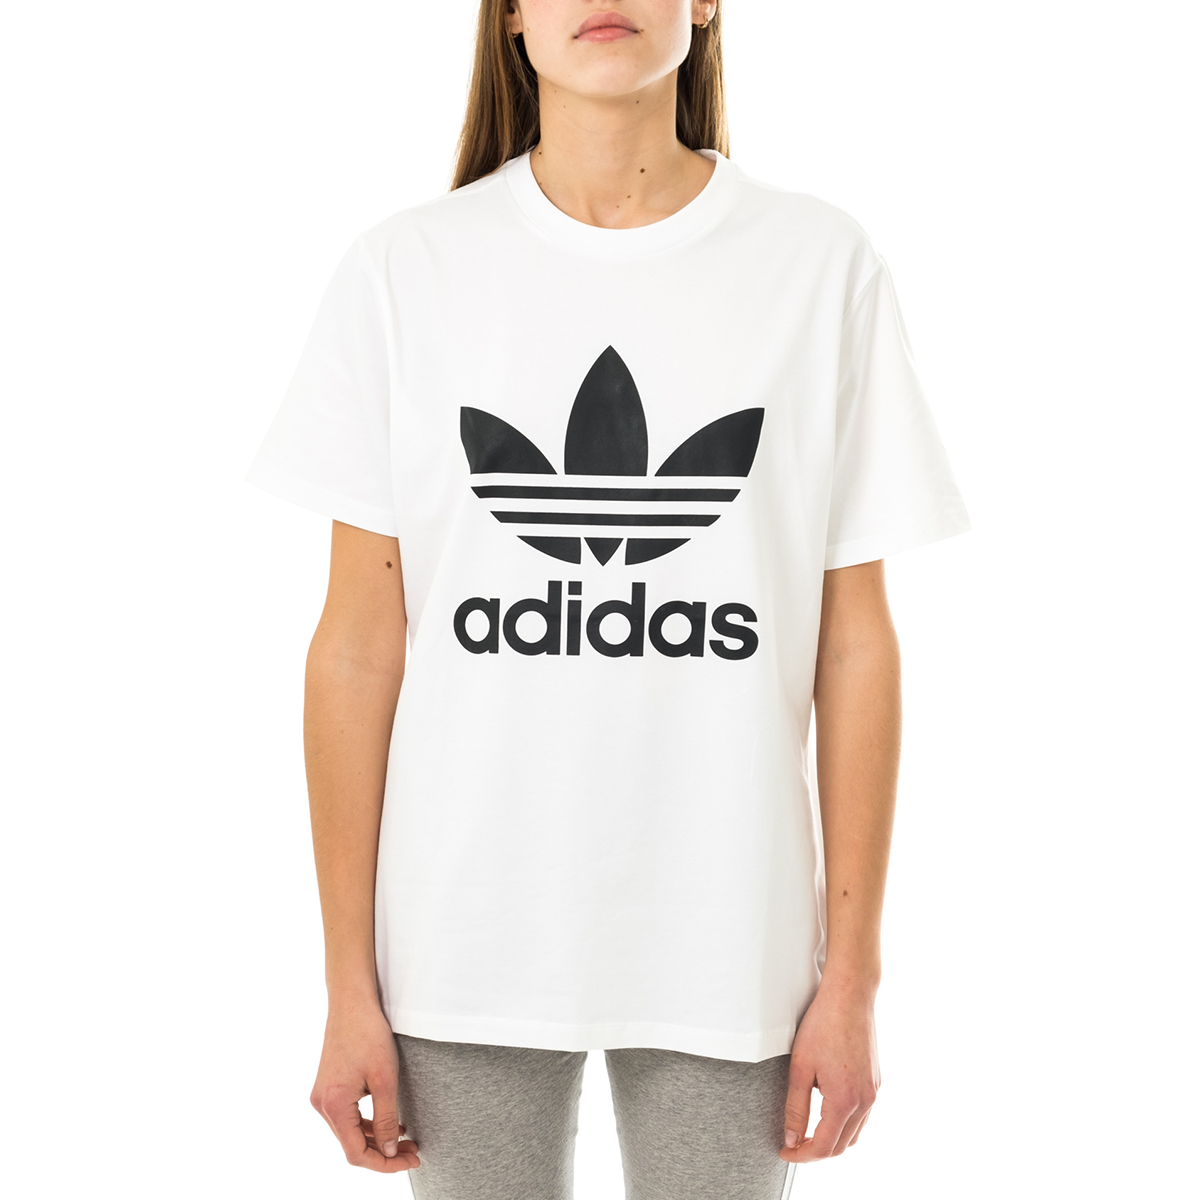 verlies de ober Australië T-shirt Woman Adidas Trefoil Tee Gn2899 | eBay